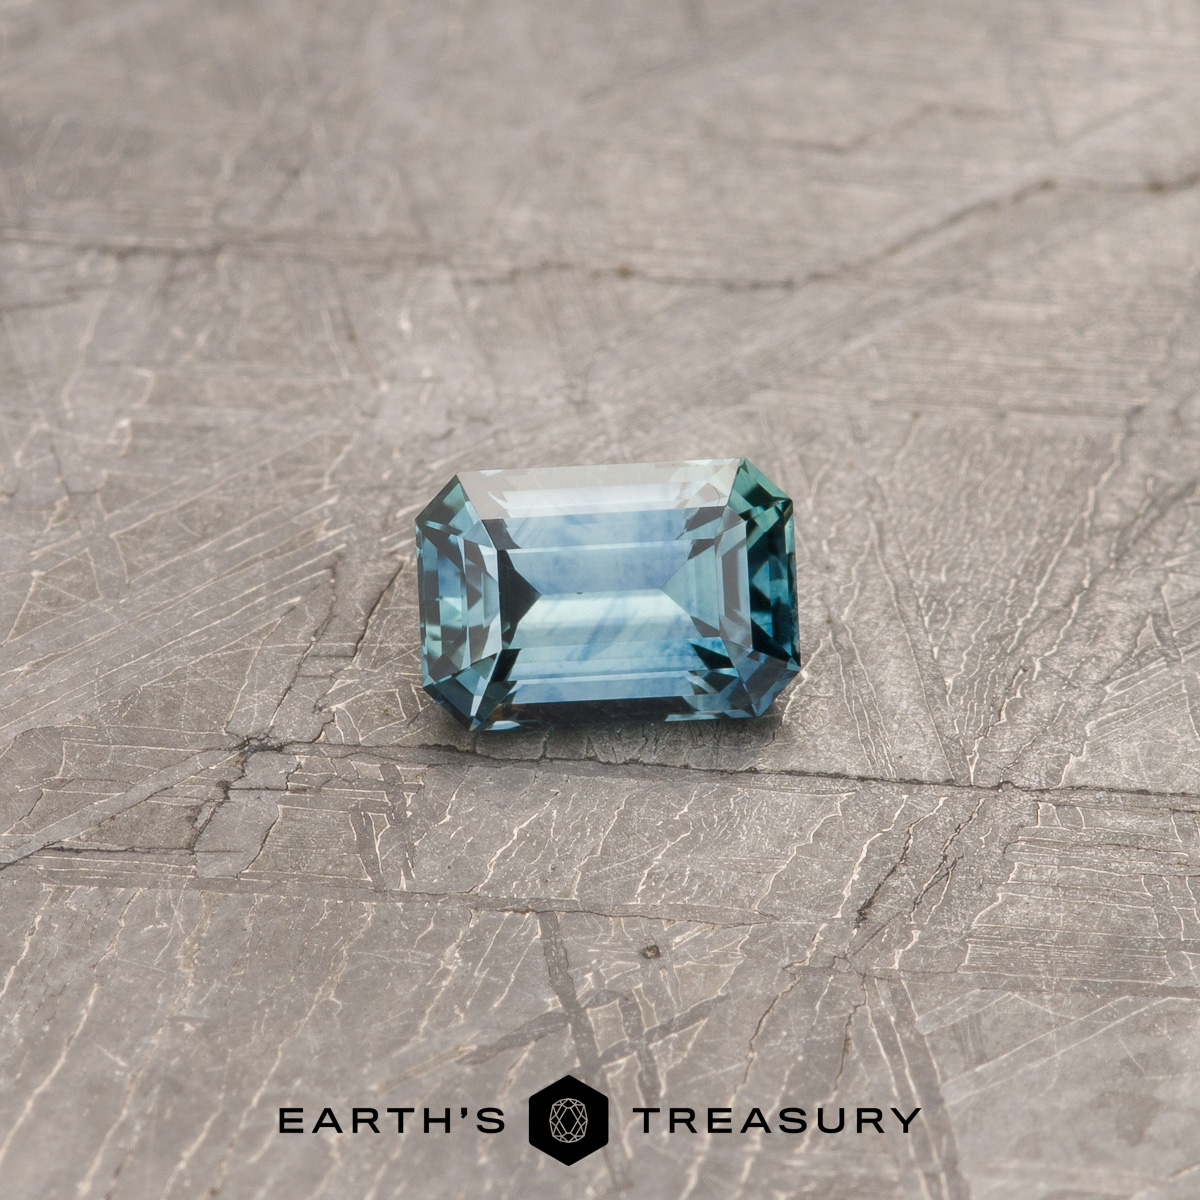 A blue-green Montana sapphire in a classic emerald cut